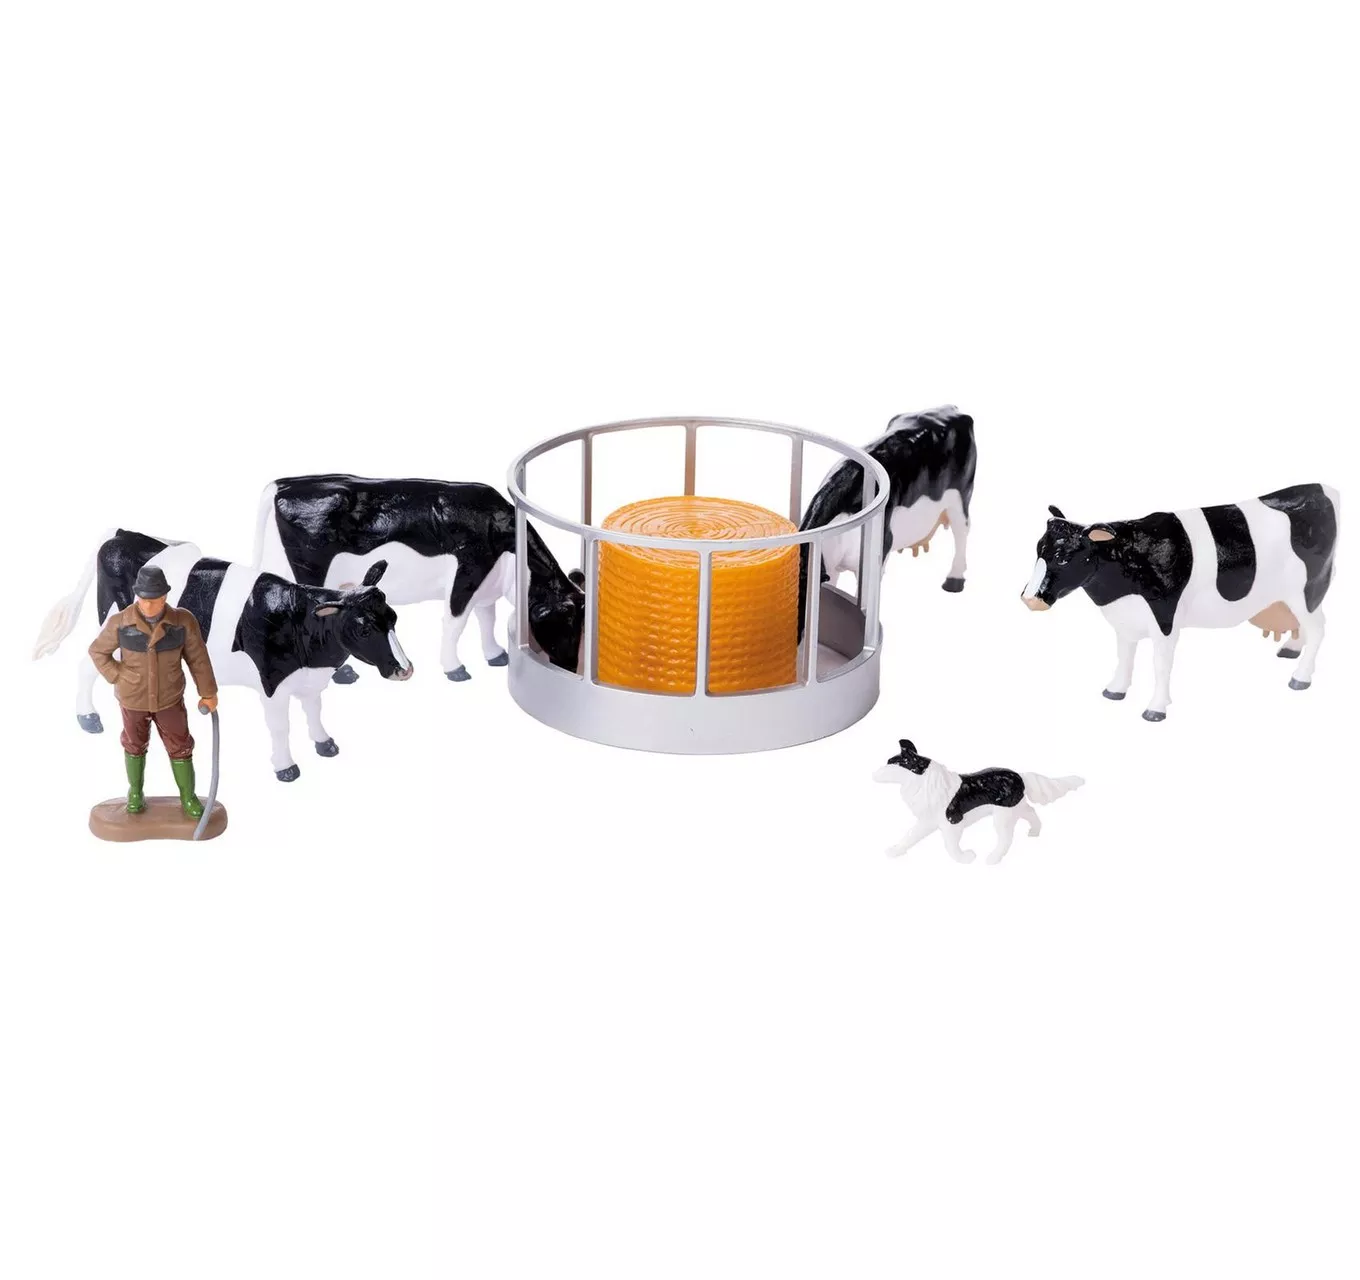 Cattle Feeder Set